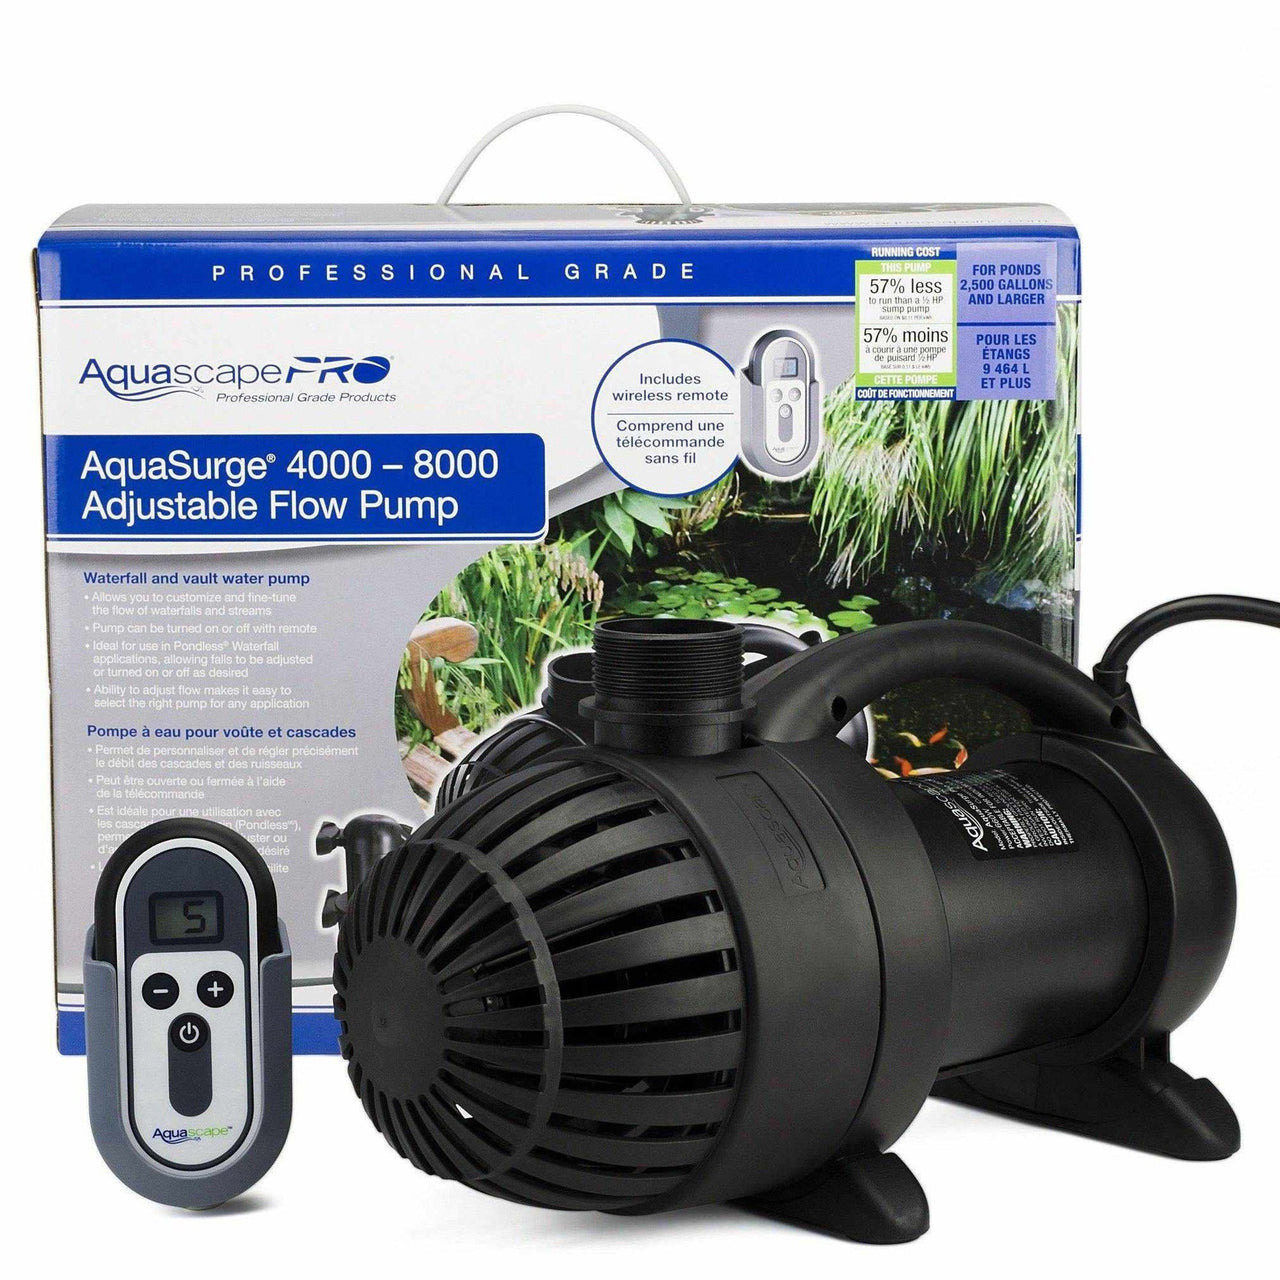 Aquascape Aquasurge PRO Adjustable Flow Pond Pump 4000-8000